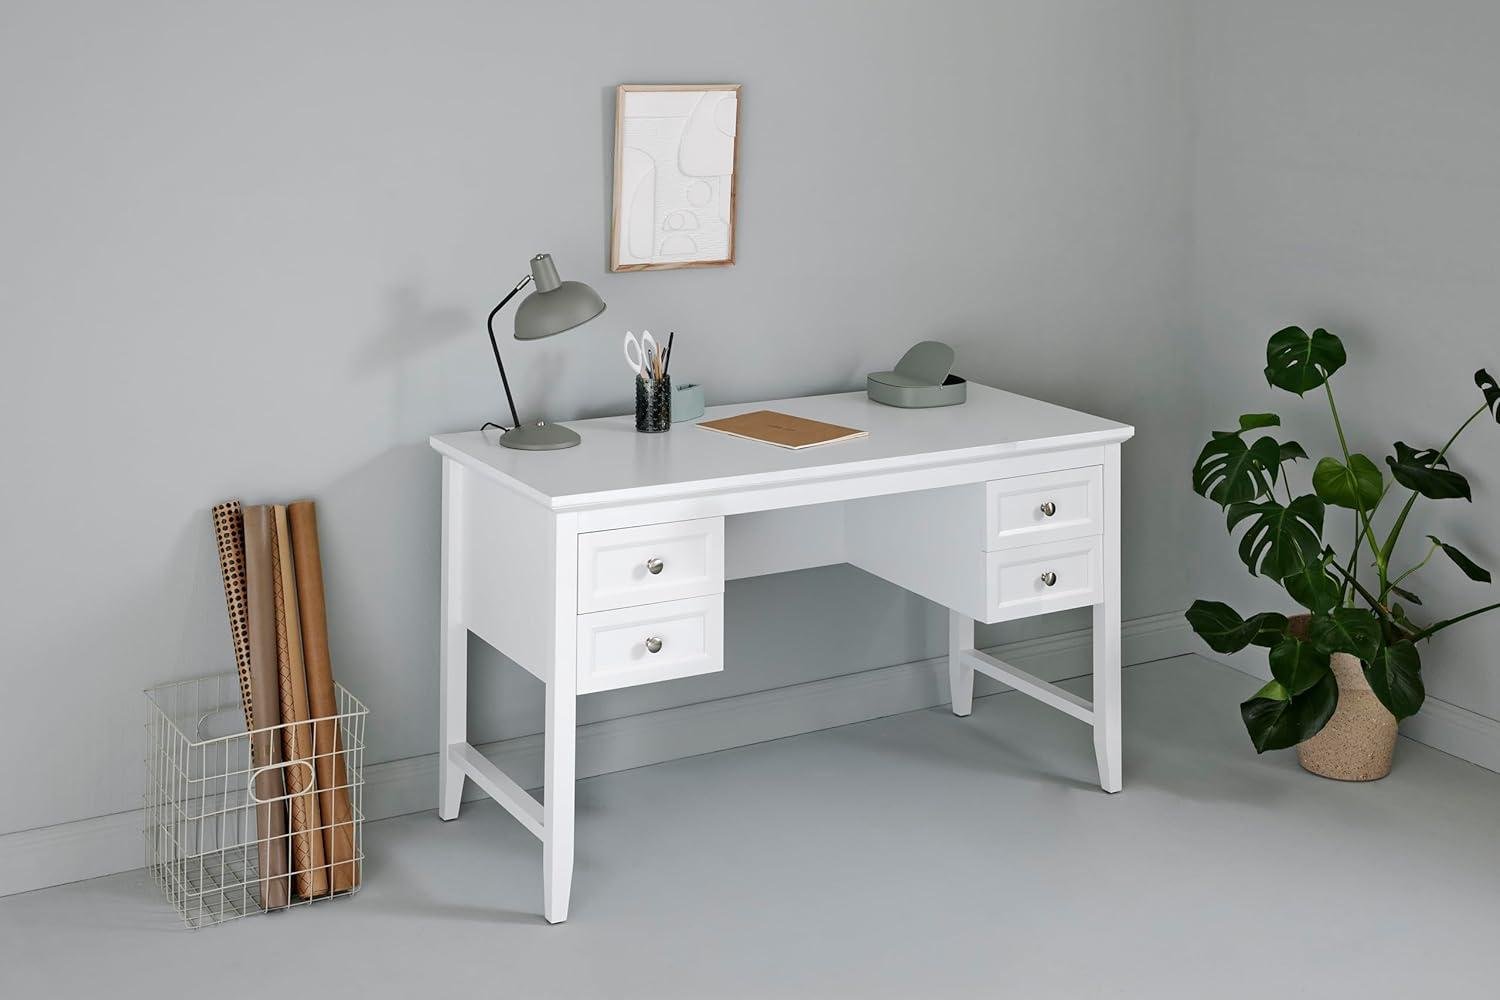 Jahnke Classic D 130 Weiss Schreibtisch, Engineered Wood, White, One Size Bild 1